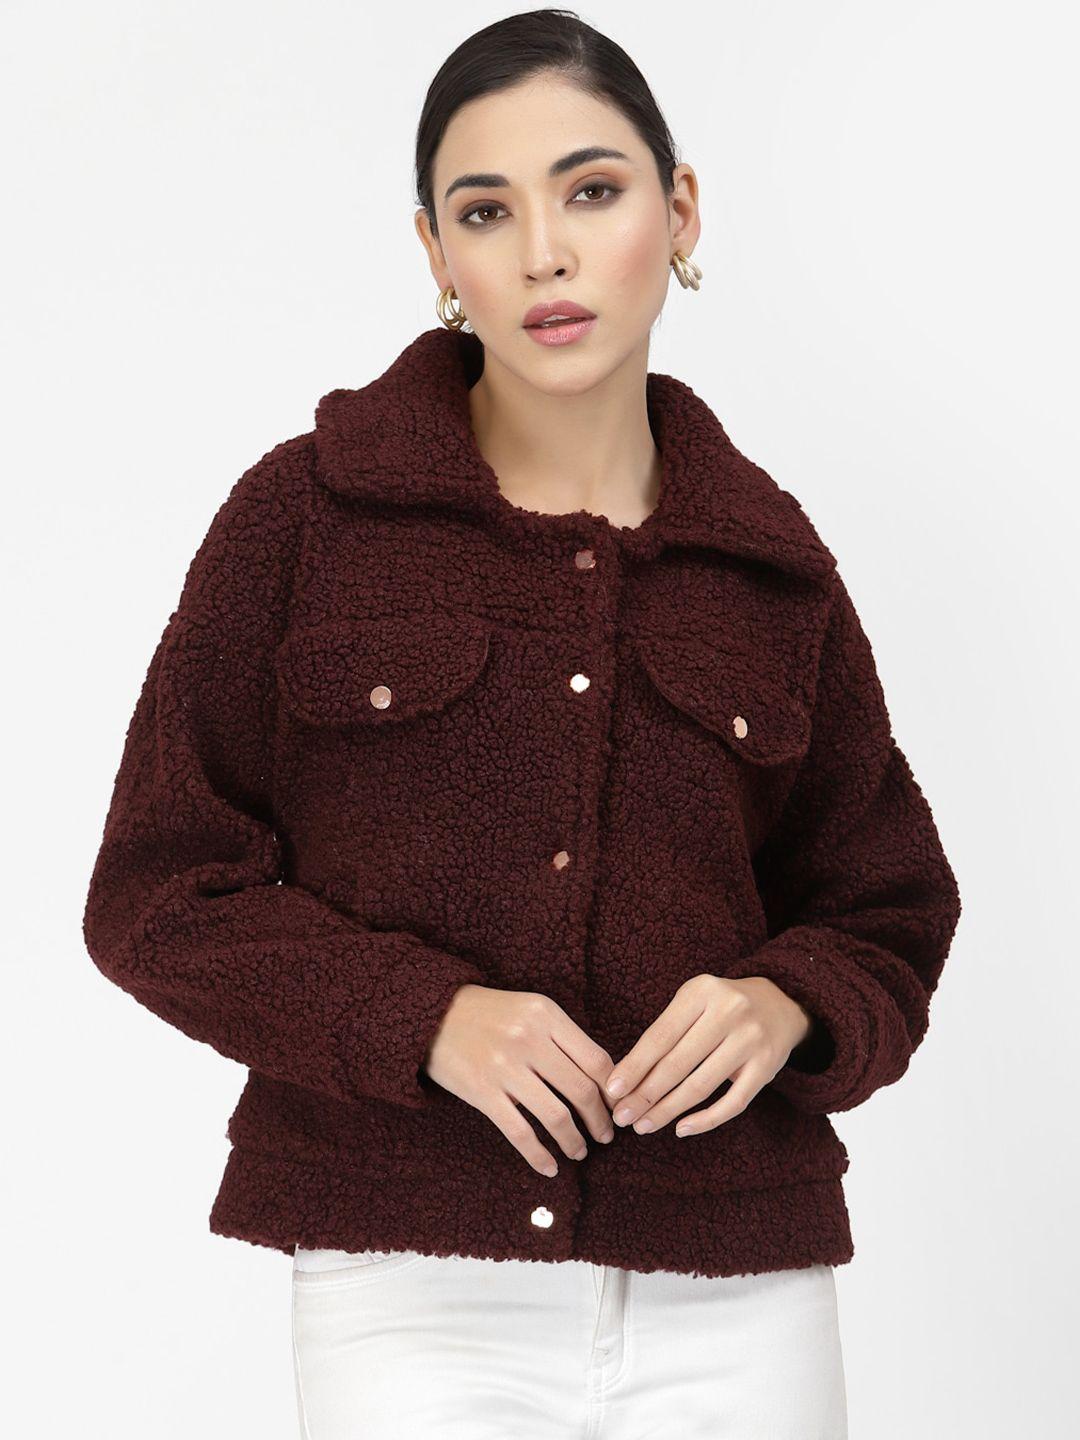 juelle women maroon long sleeves fleece sweatshirt